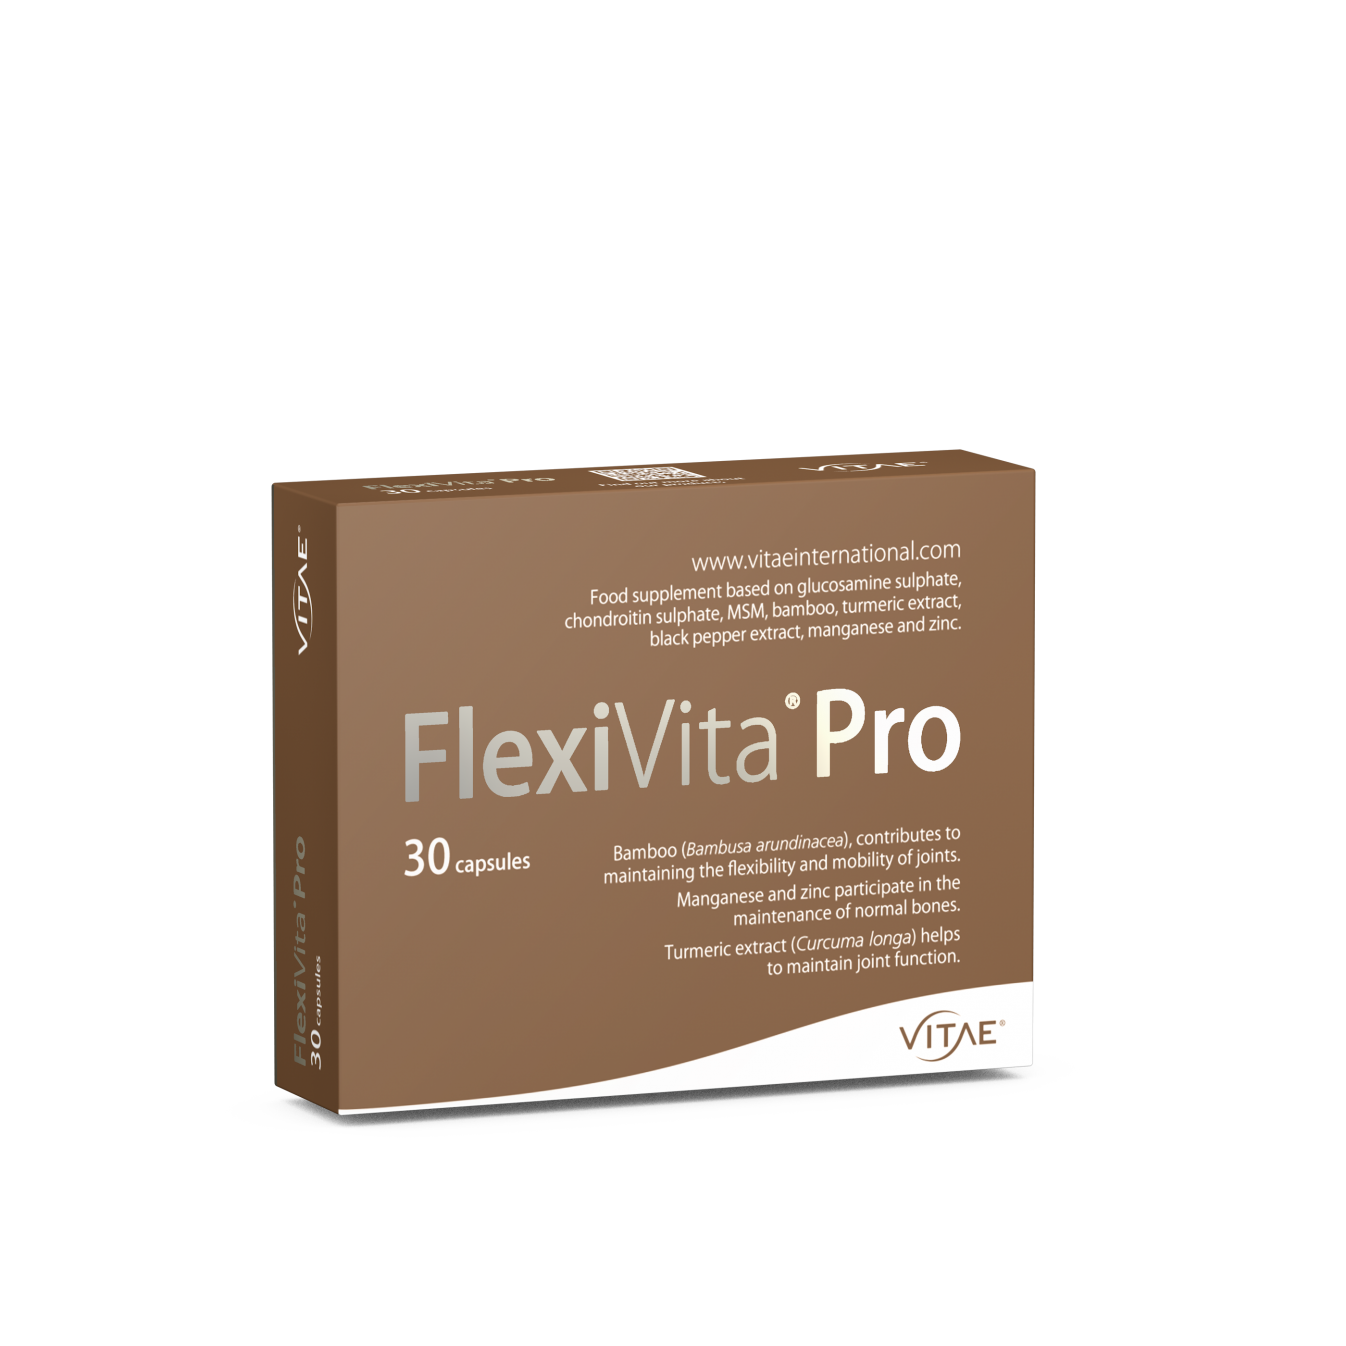 Vitae FlexiVita Pro